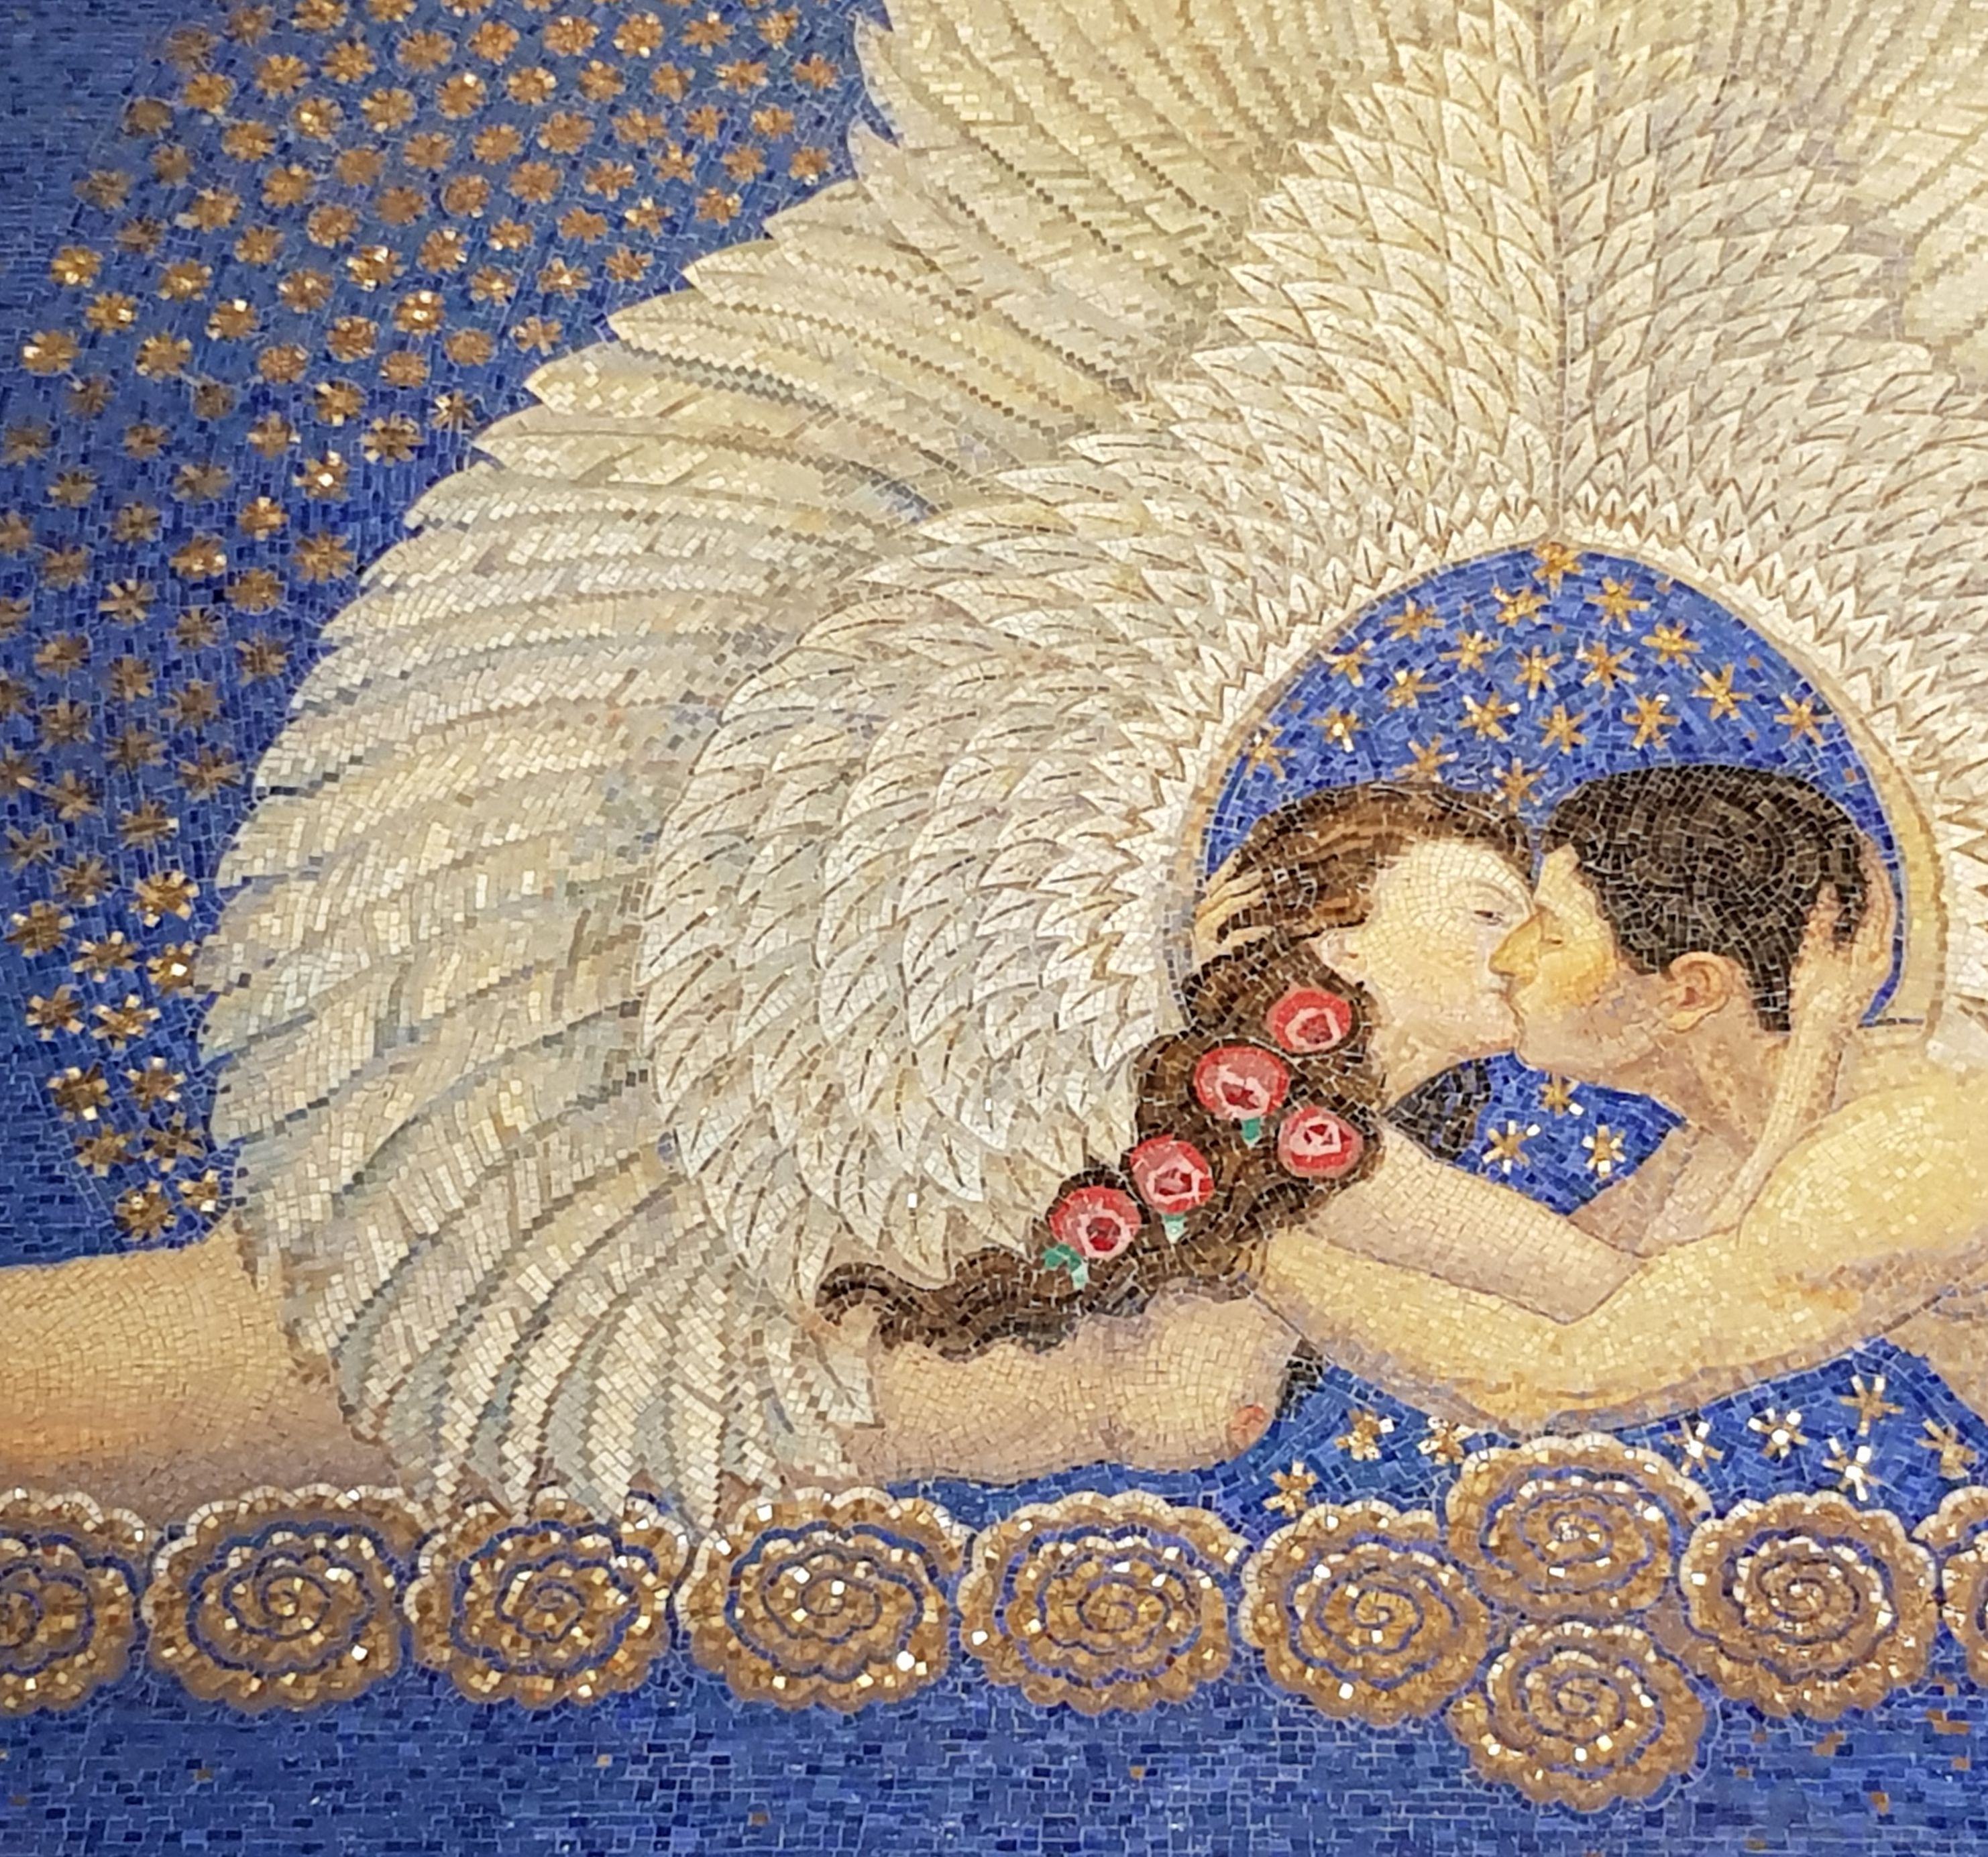 The mosaic tableau by Friedrich Wilhelm Kleukens. Image: Art Deco Webstore